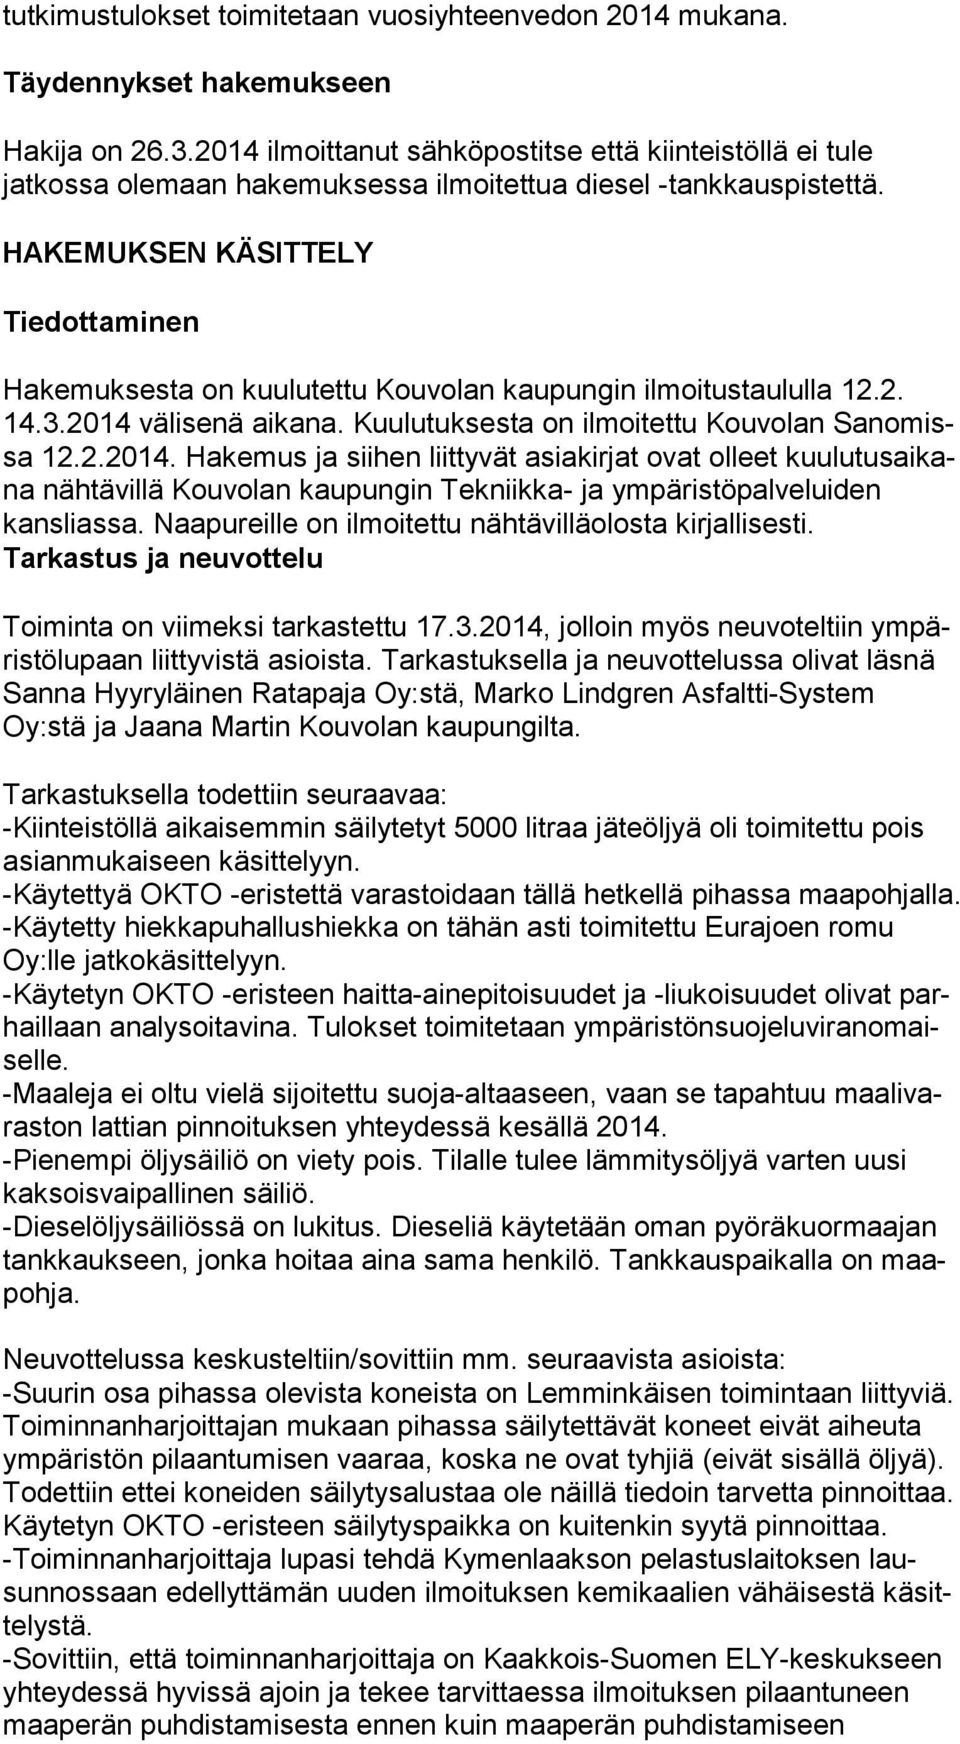 HAKEMUKSEN KÄSITTELY Tiedottaminen Hakemuksesta on kuulutettu Kouvolan kaupungin ilmoitustaululla 12.2. 14.3.2014 